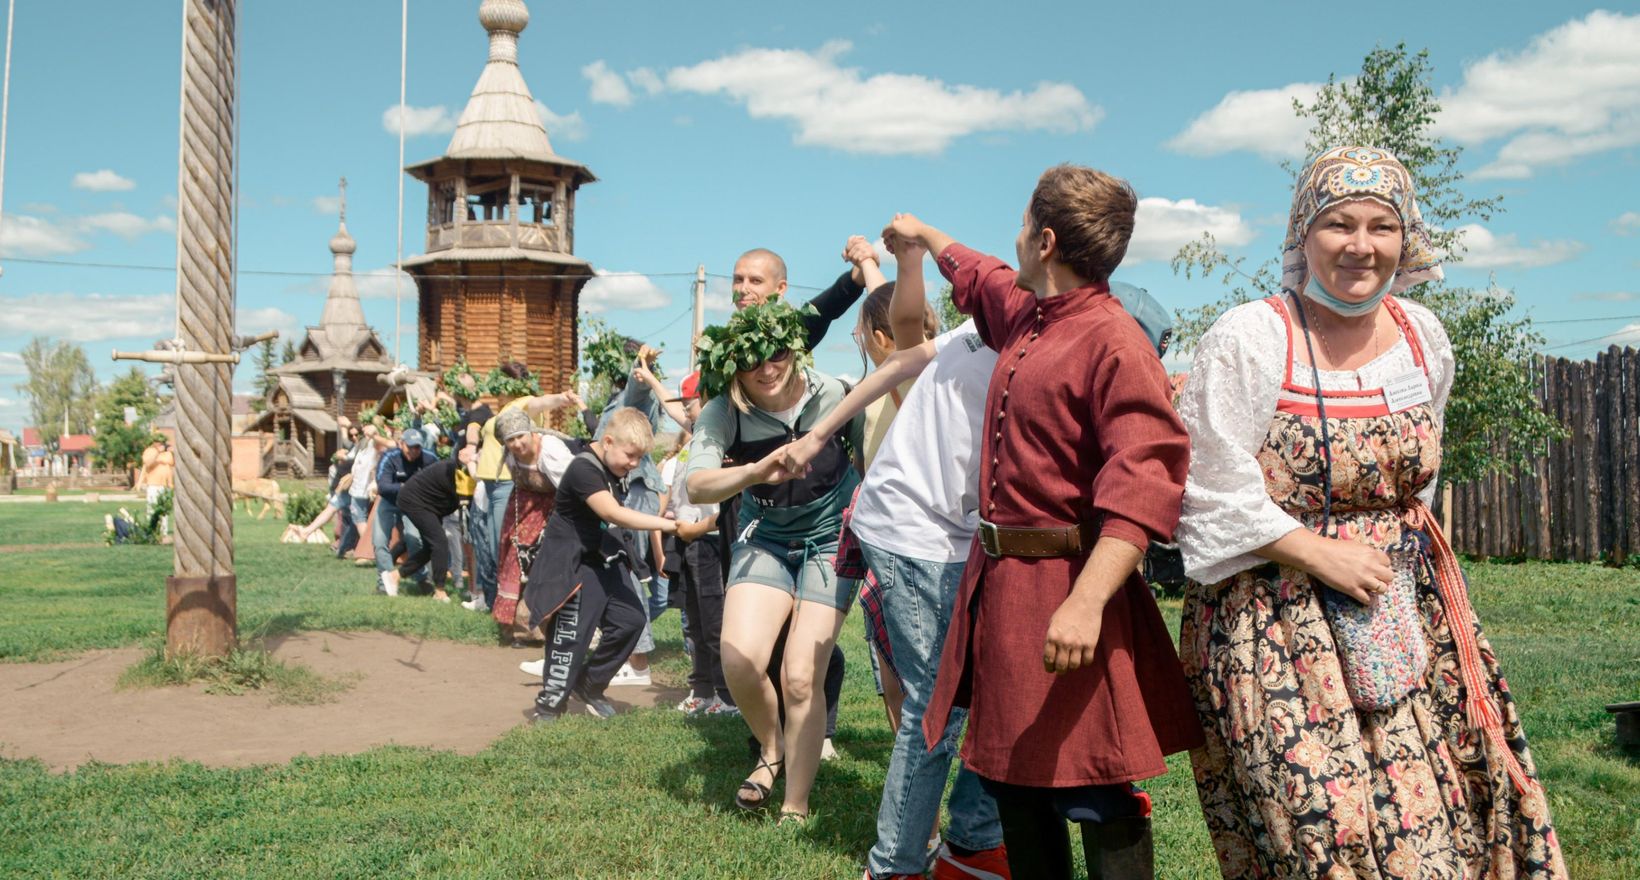 Национальный праздник в Белоруссии Купалье